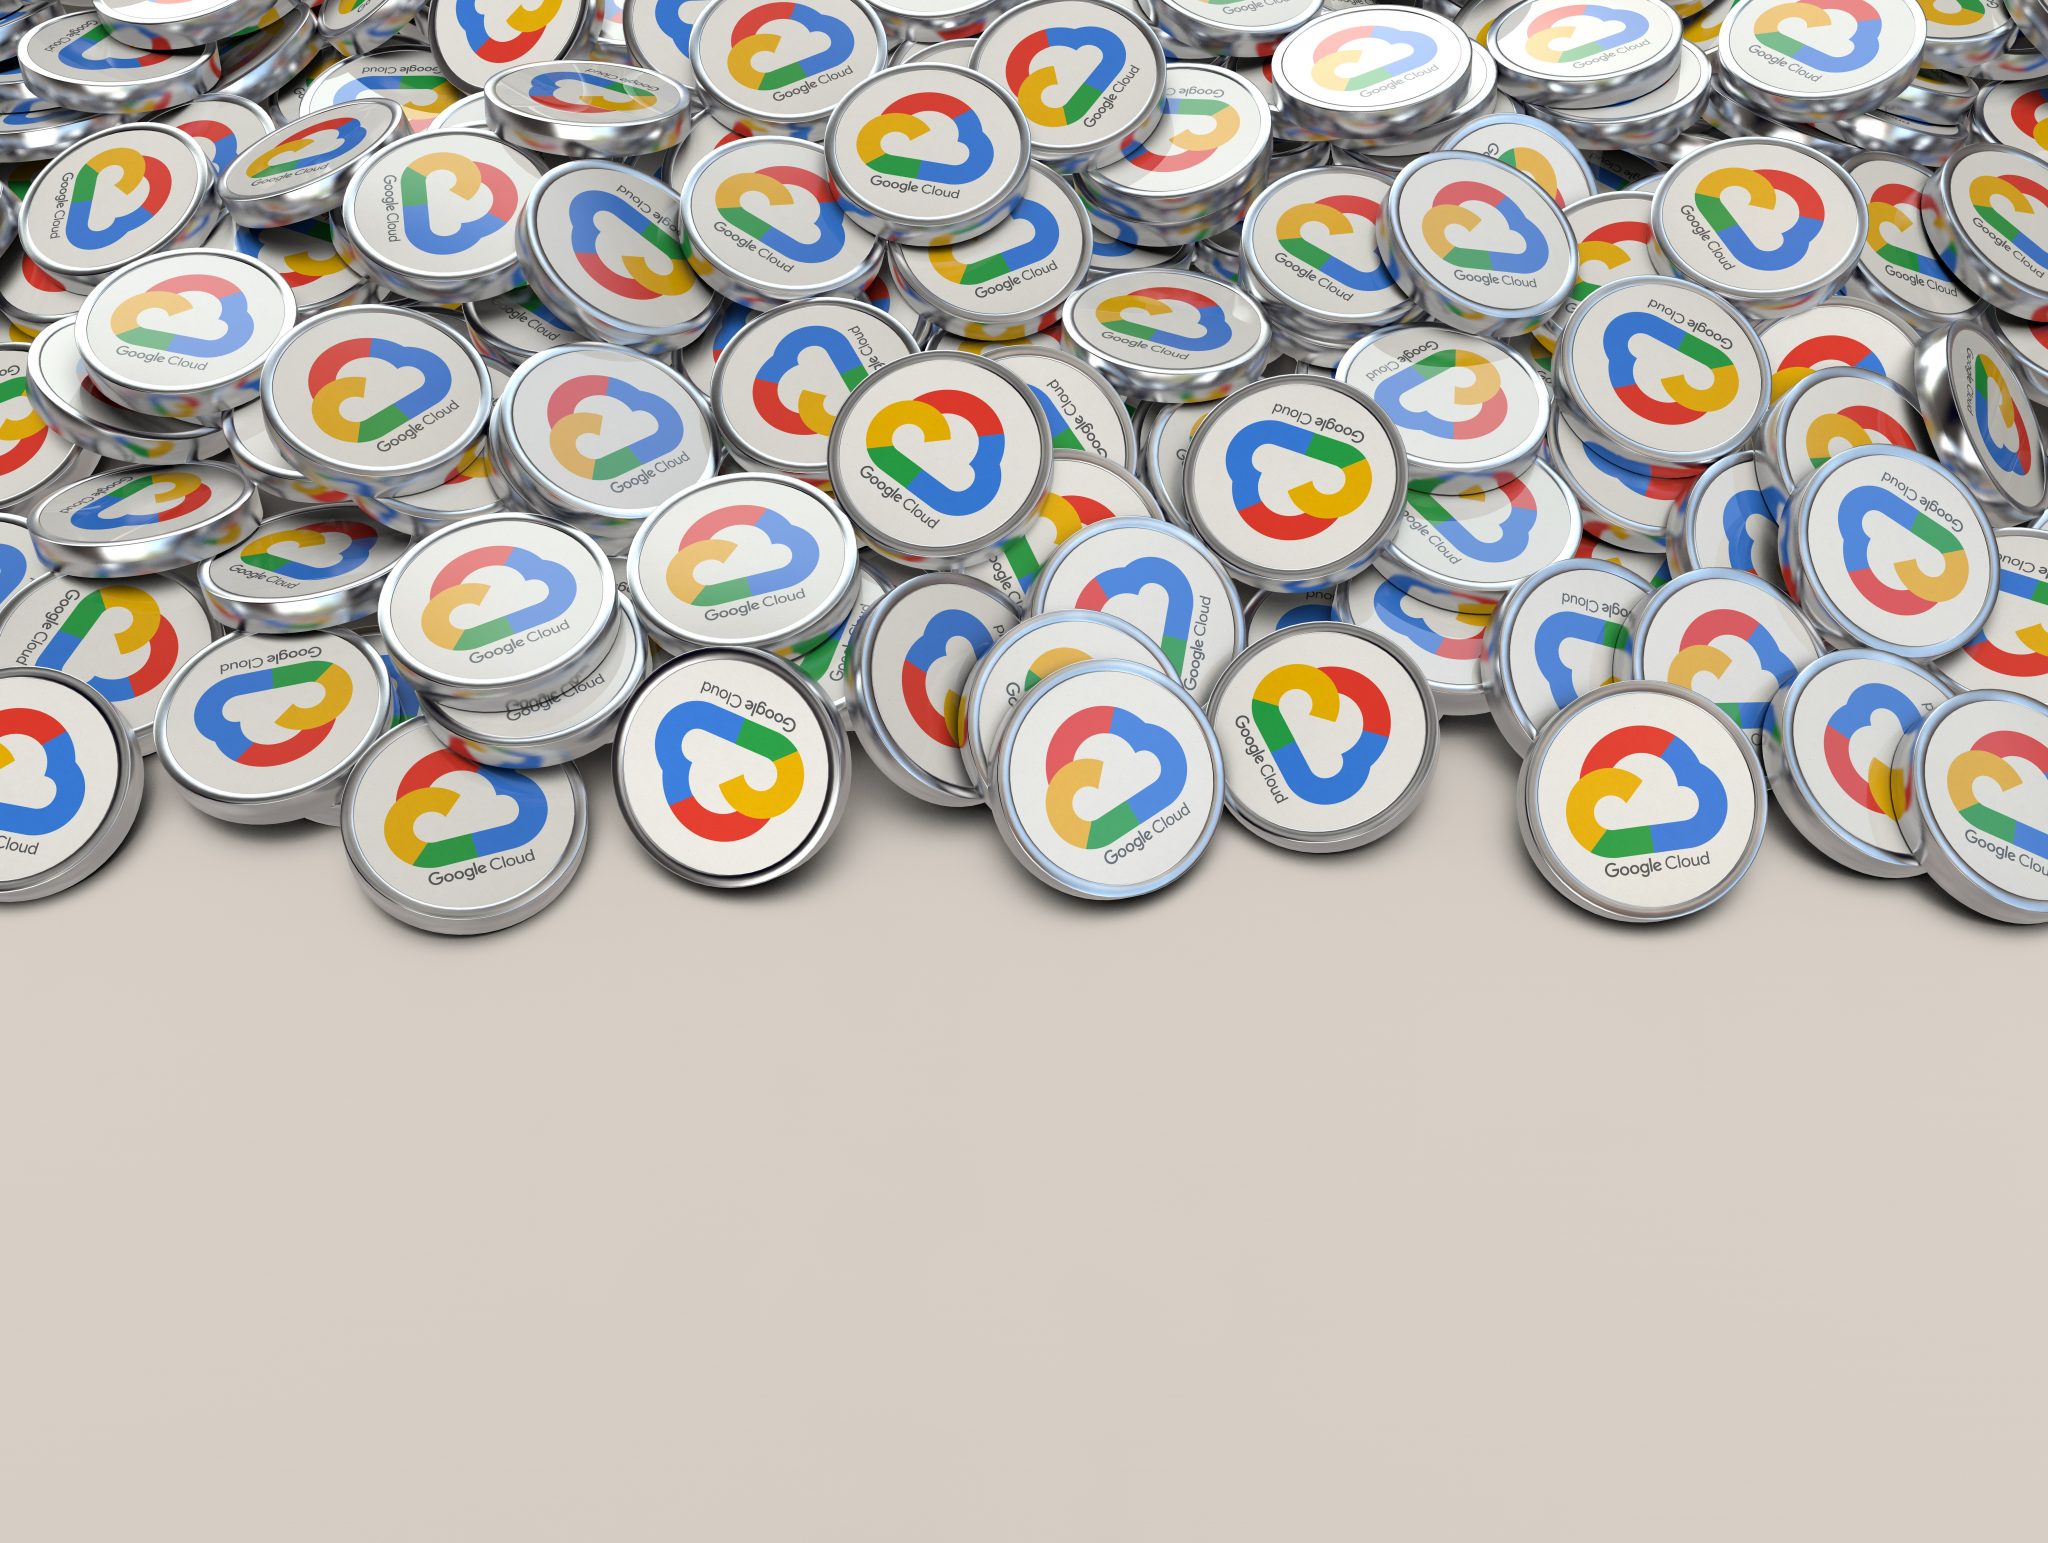 Google Cloud lâche du lest sur les frais de sortie